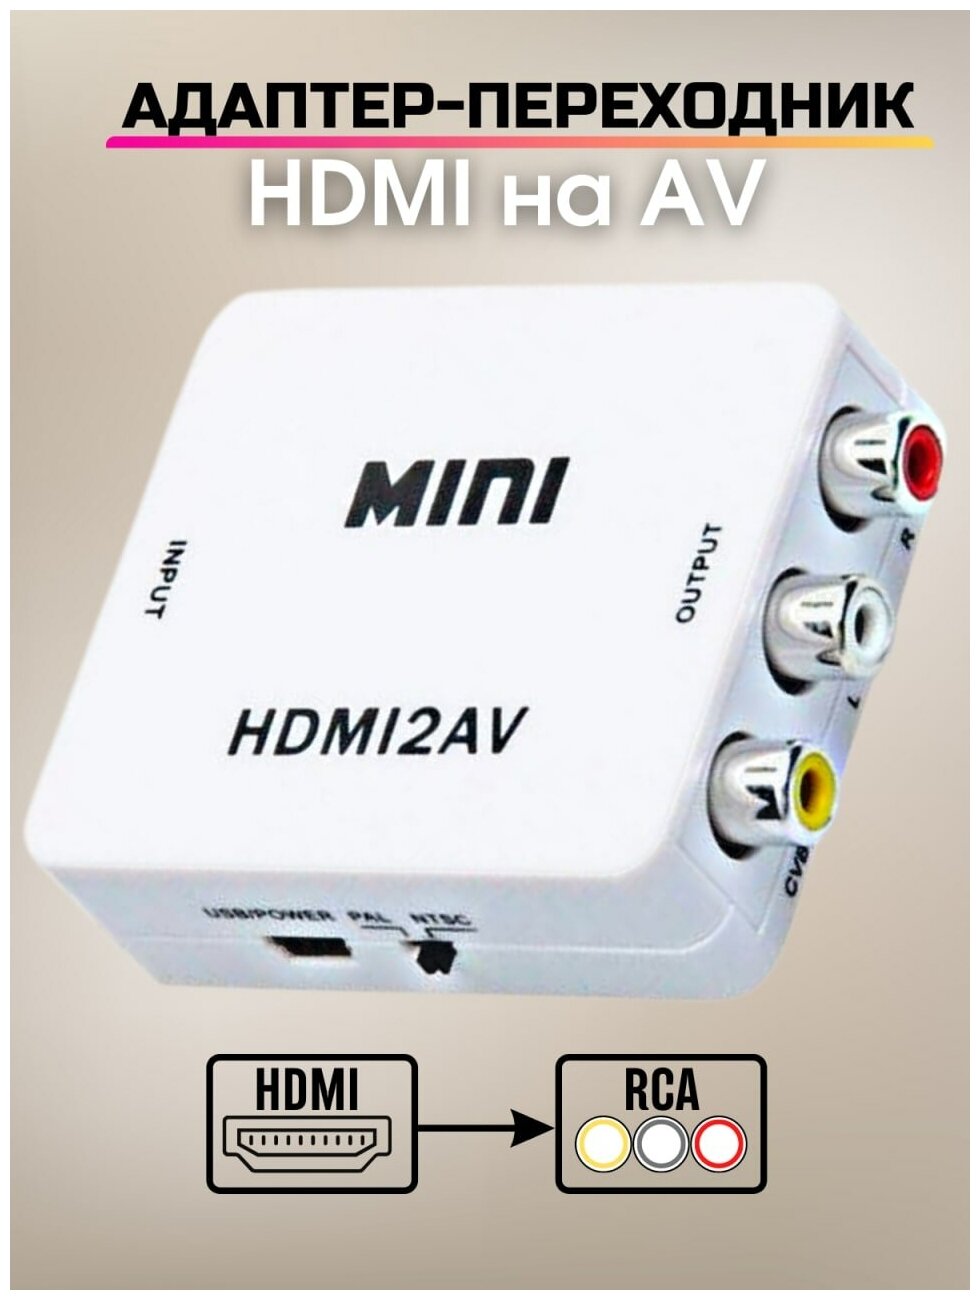 Переходник HDMI на AV